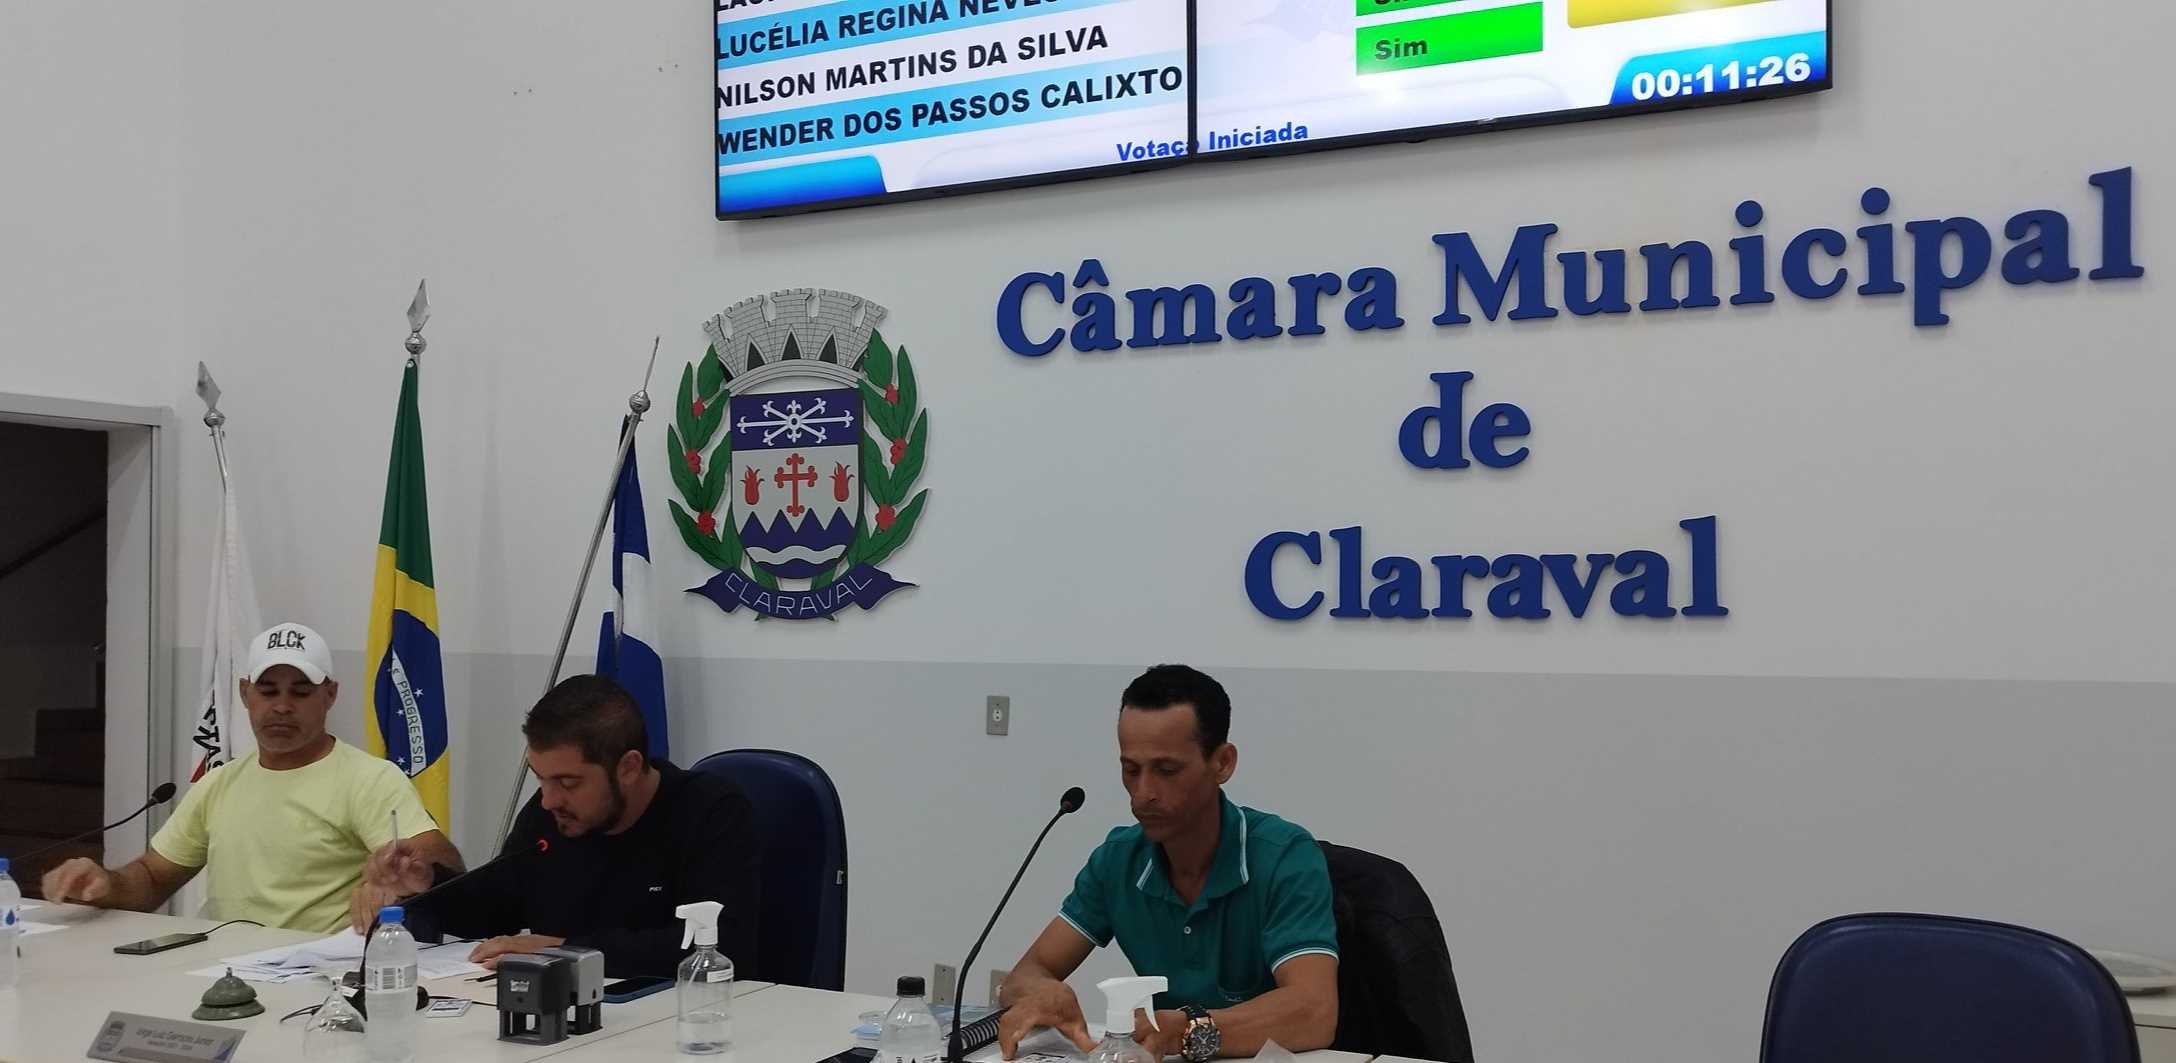 Câmara Municipal de Claraval - Principal